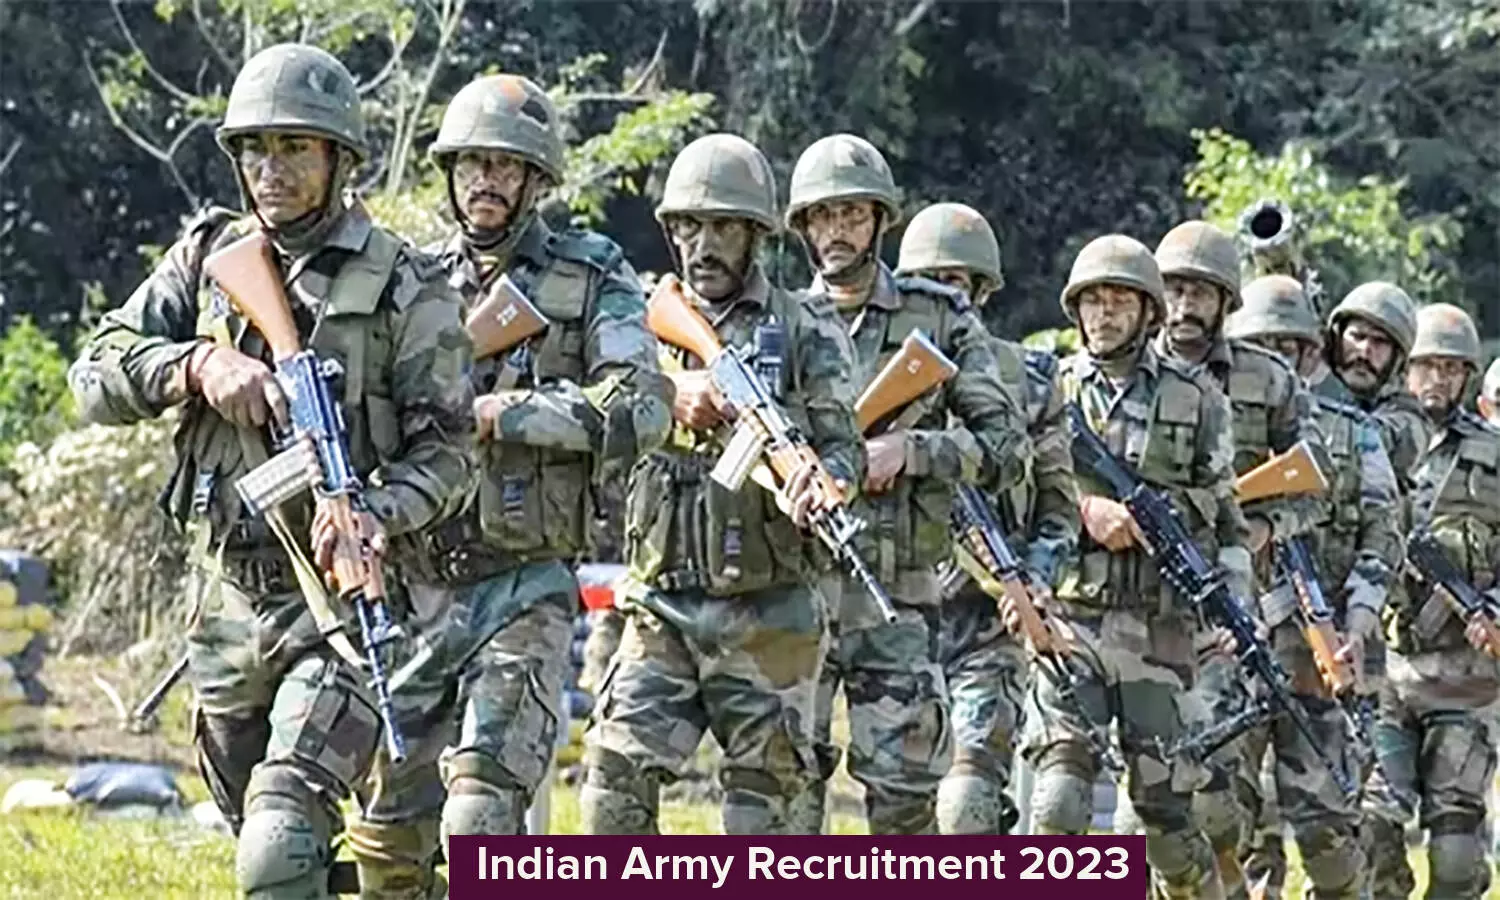 Indian Army Recruitment 2023: इंडियन आर्मी में 10वीं पास युवाओं के लिए निकली वैकेंसी, कैसे कर सकते हैं अप्लाई जान लें